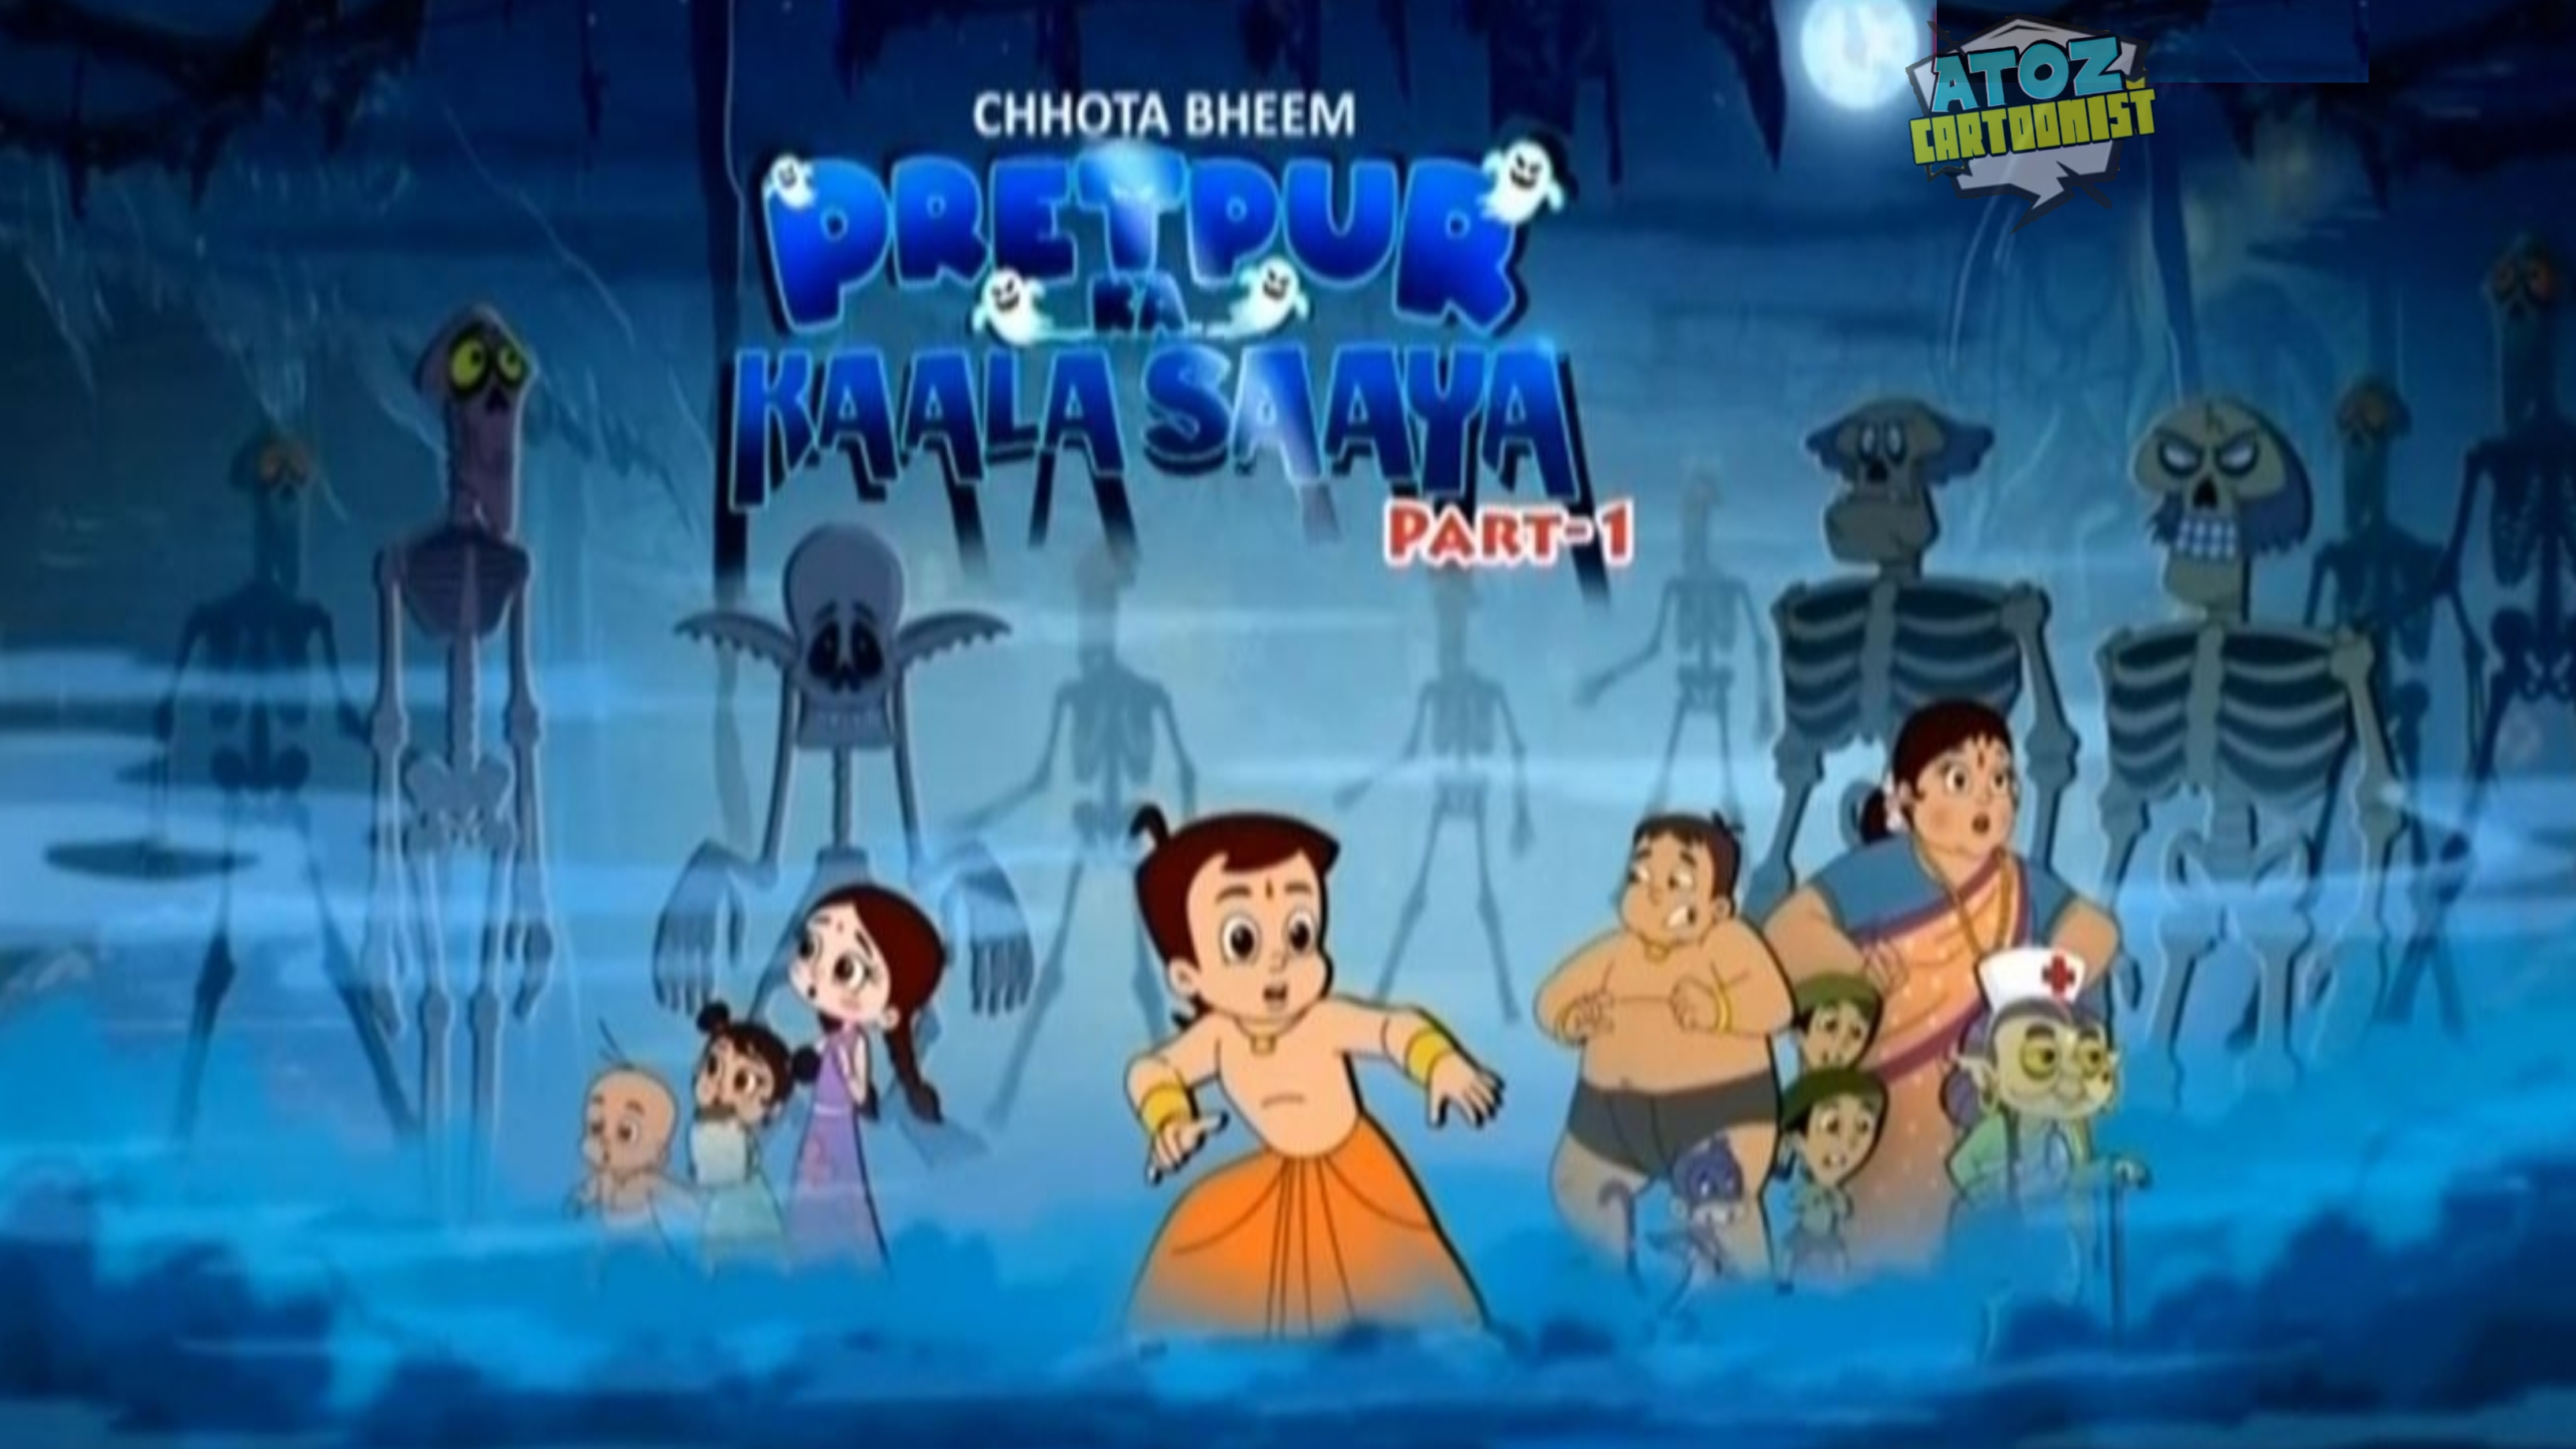 Chhota Bheem: Pretpur Ka Kaala Saaya Mini Series Multi Audio Download 576p SDTV WEB-DL